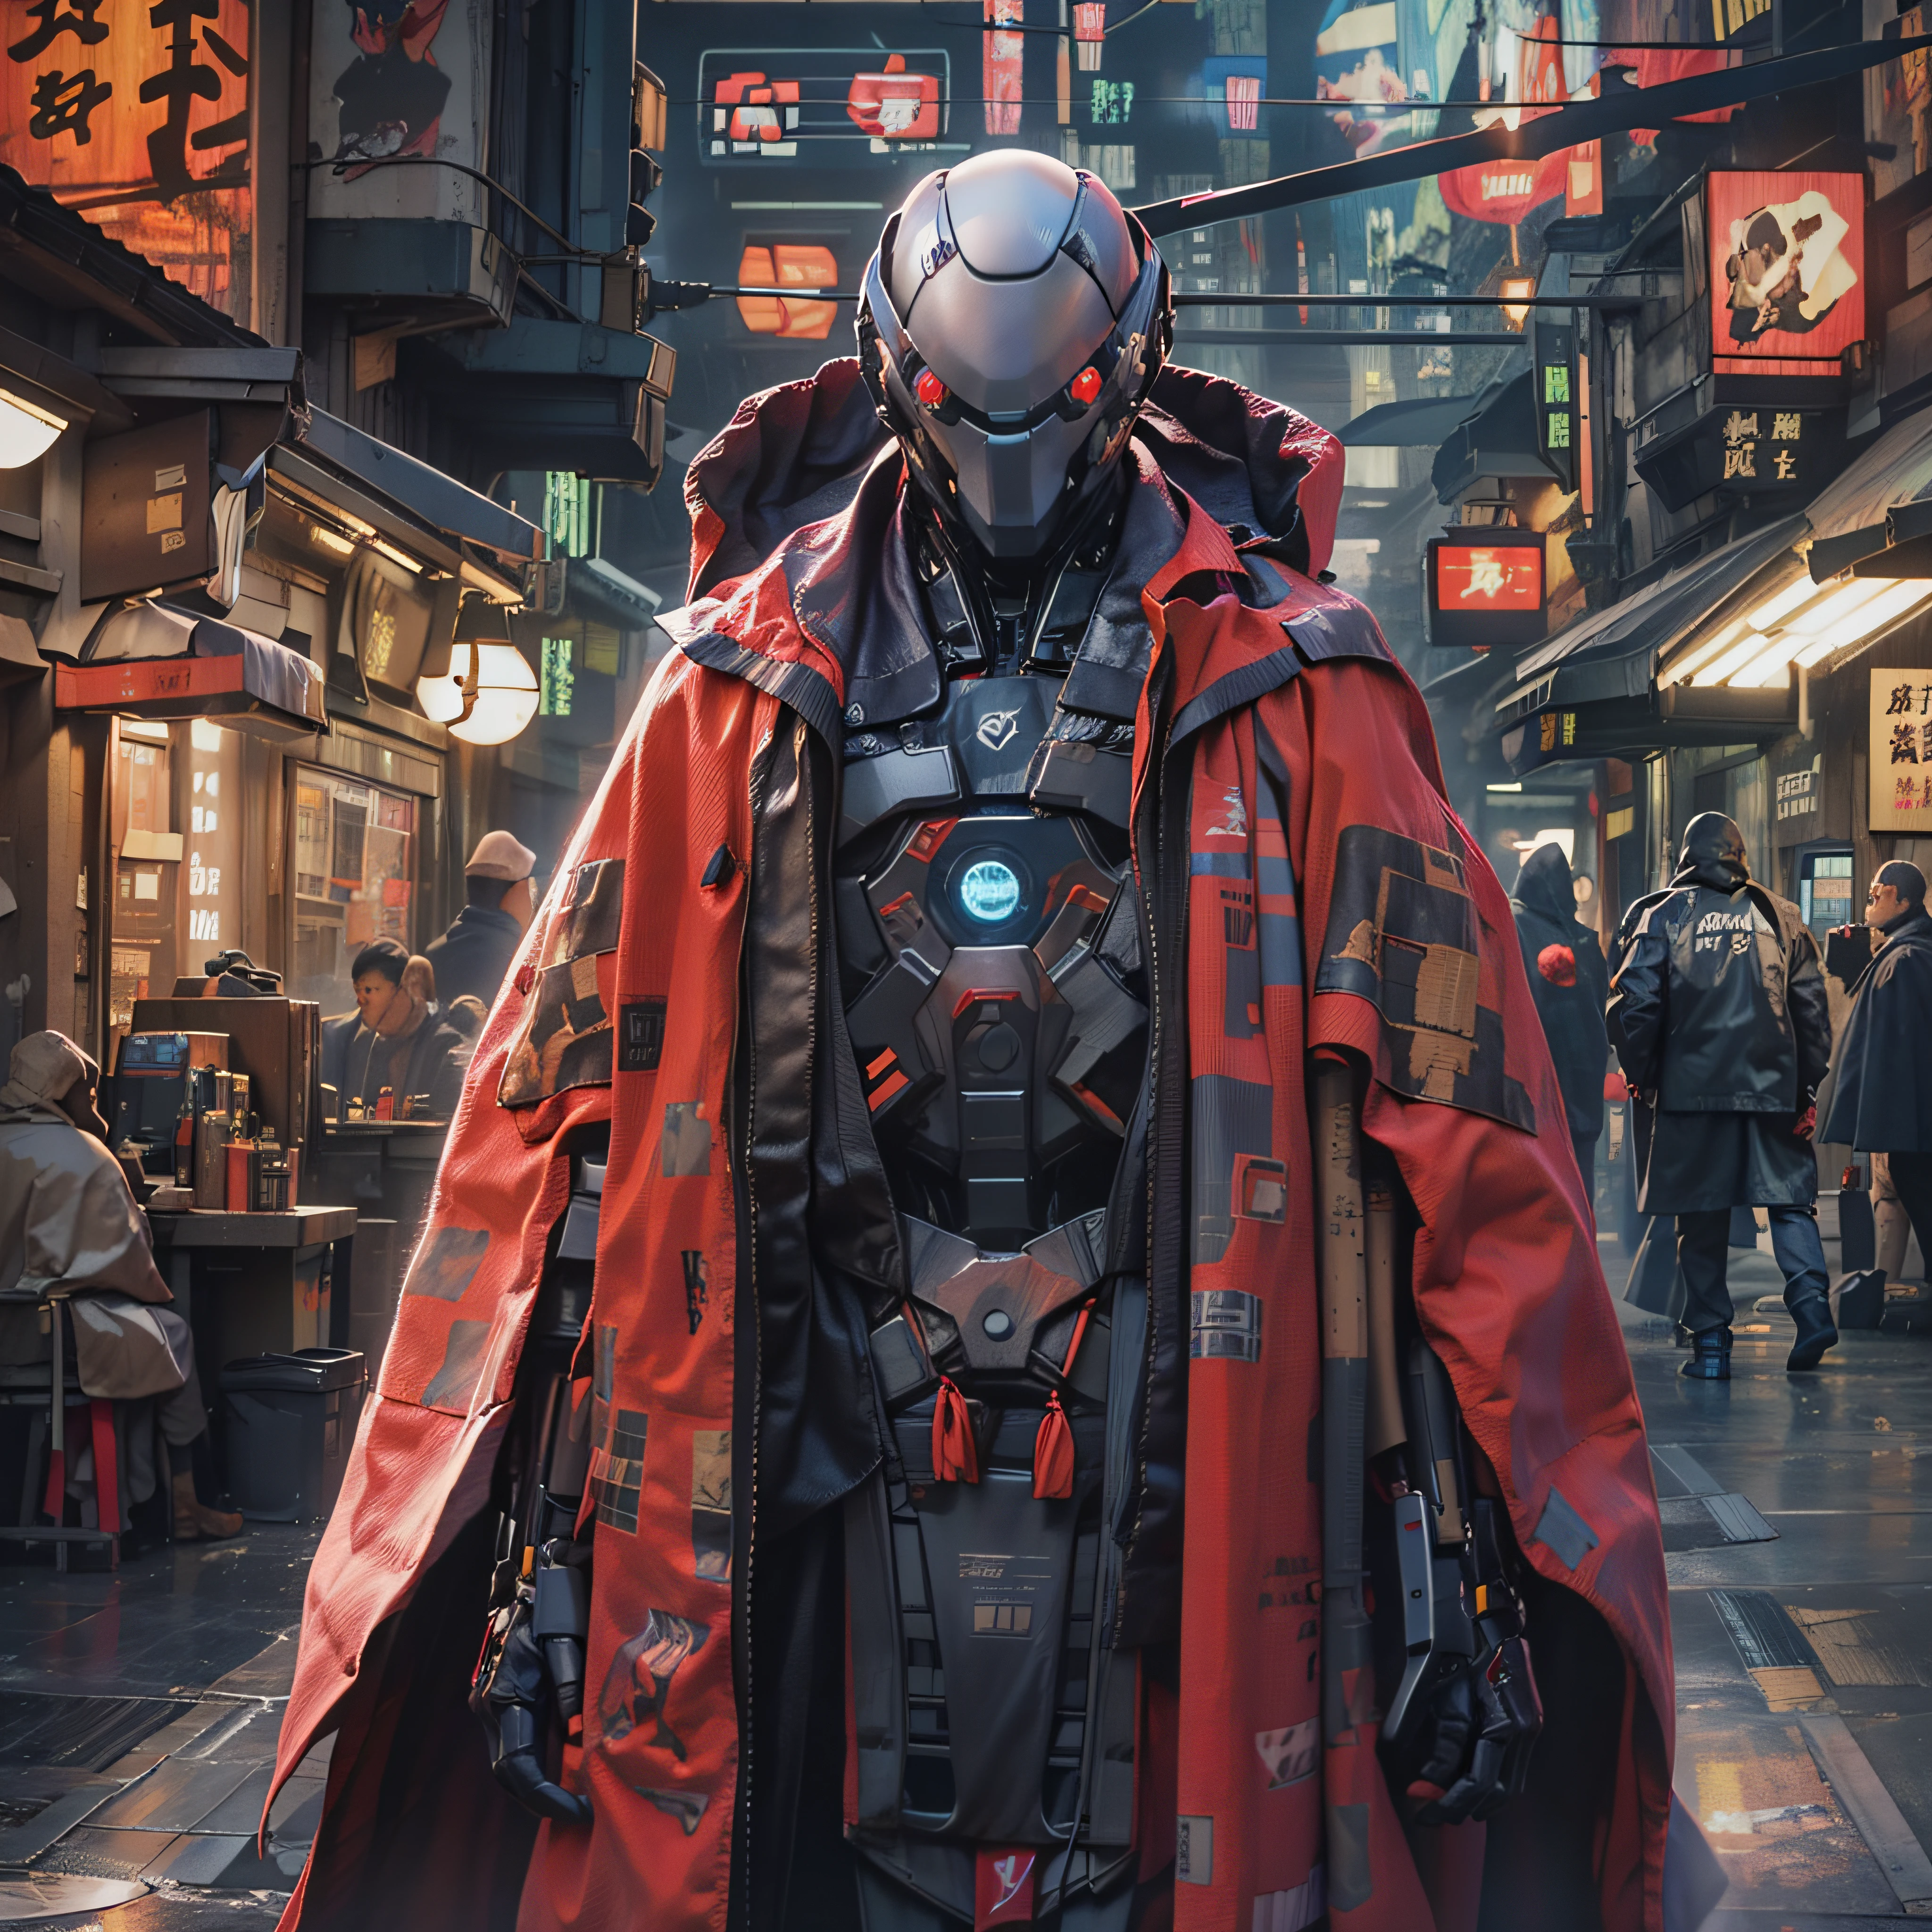 cyberfusion,Shinsengumi Haori Attentäter Roboter Cyborg trägt Robe Umhang,Elite-Unternehmenssicherheit, Cyberpunk-Einkaufsviertel